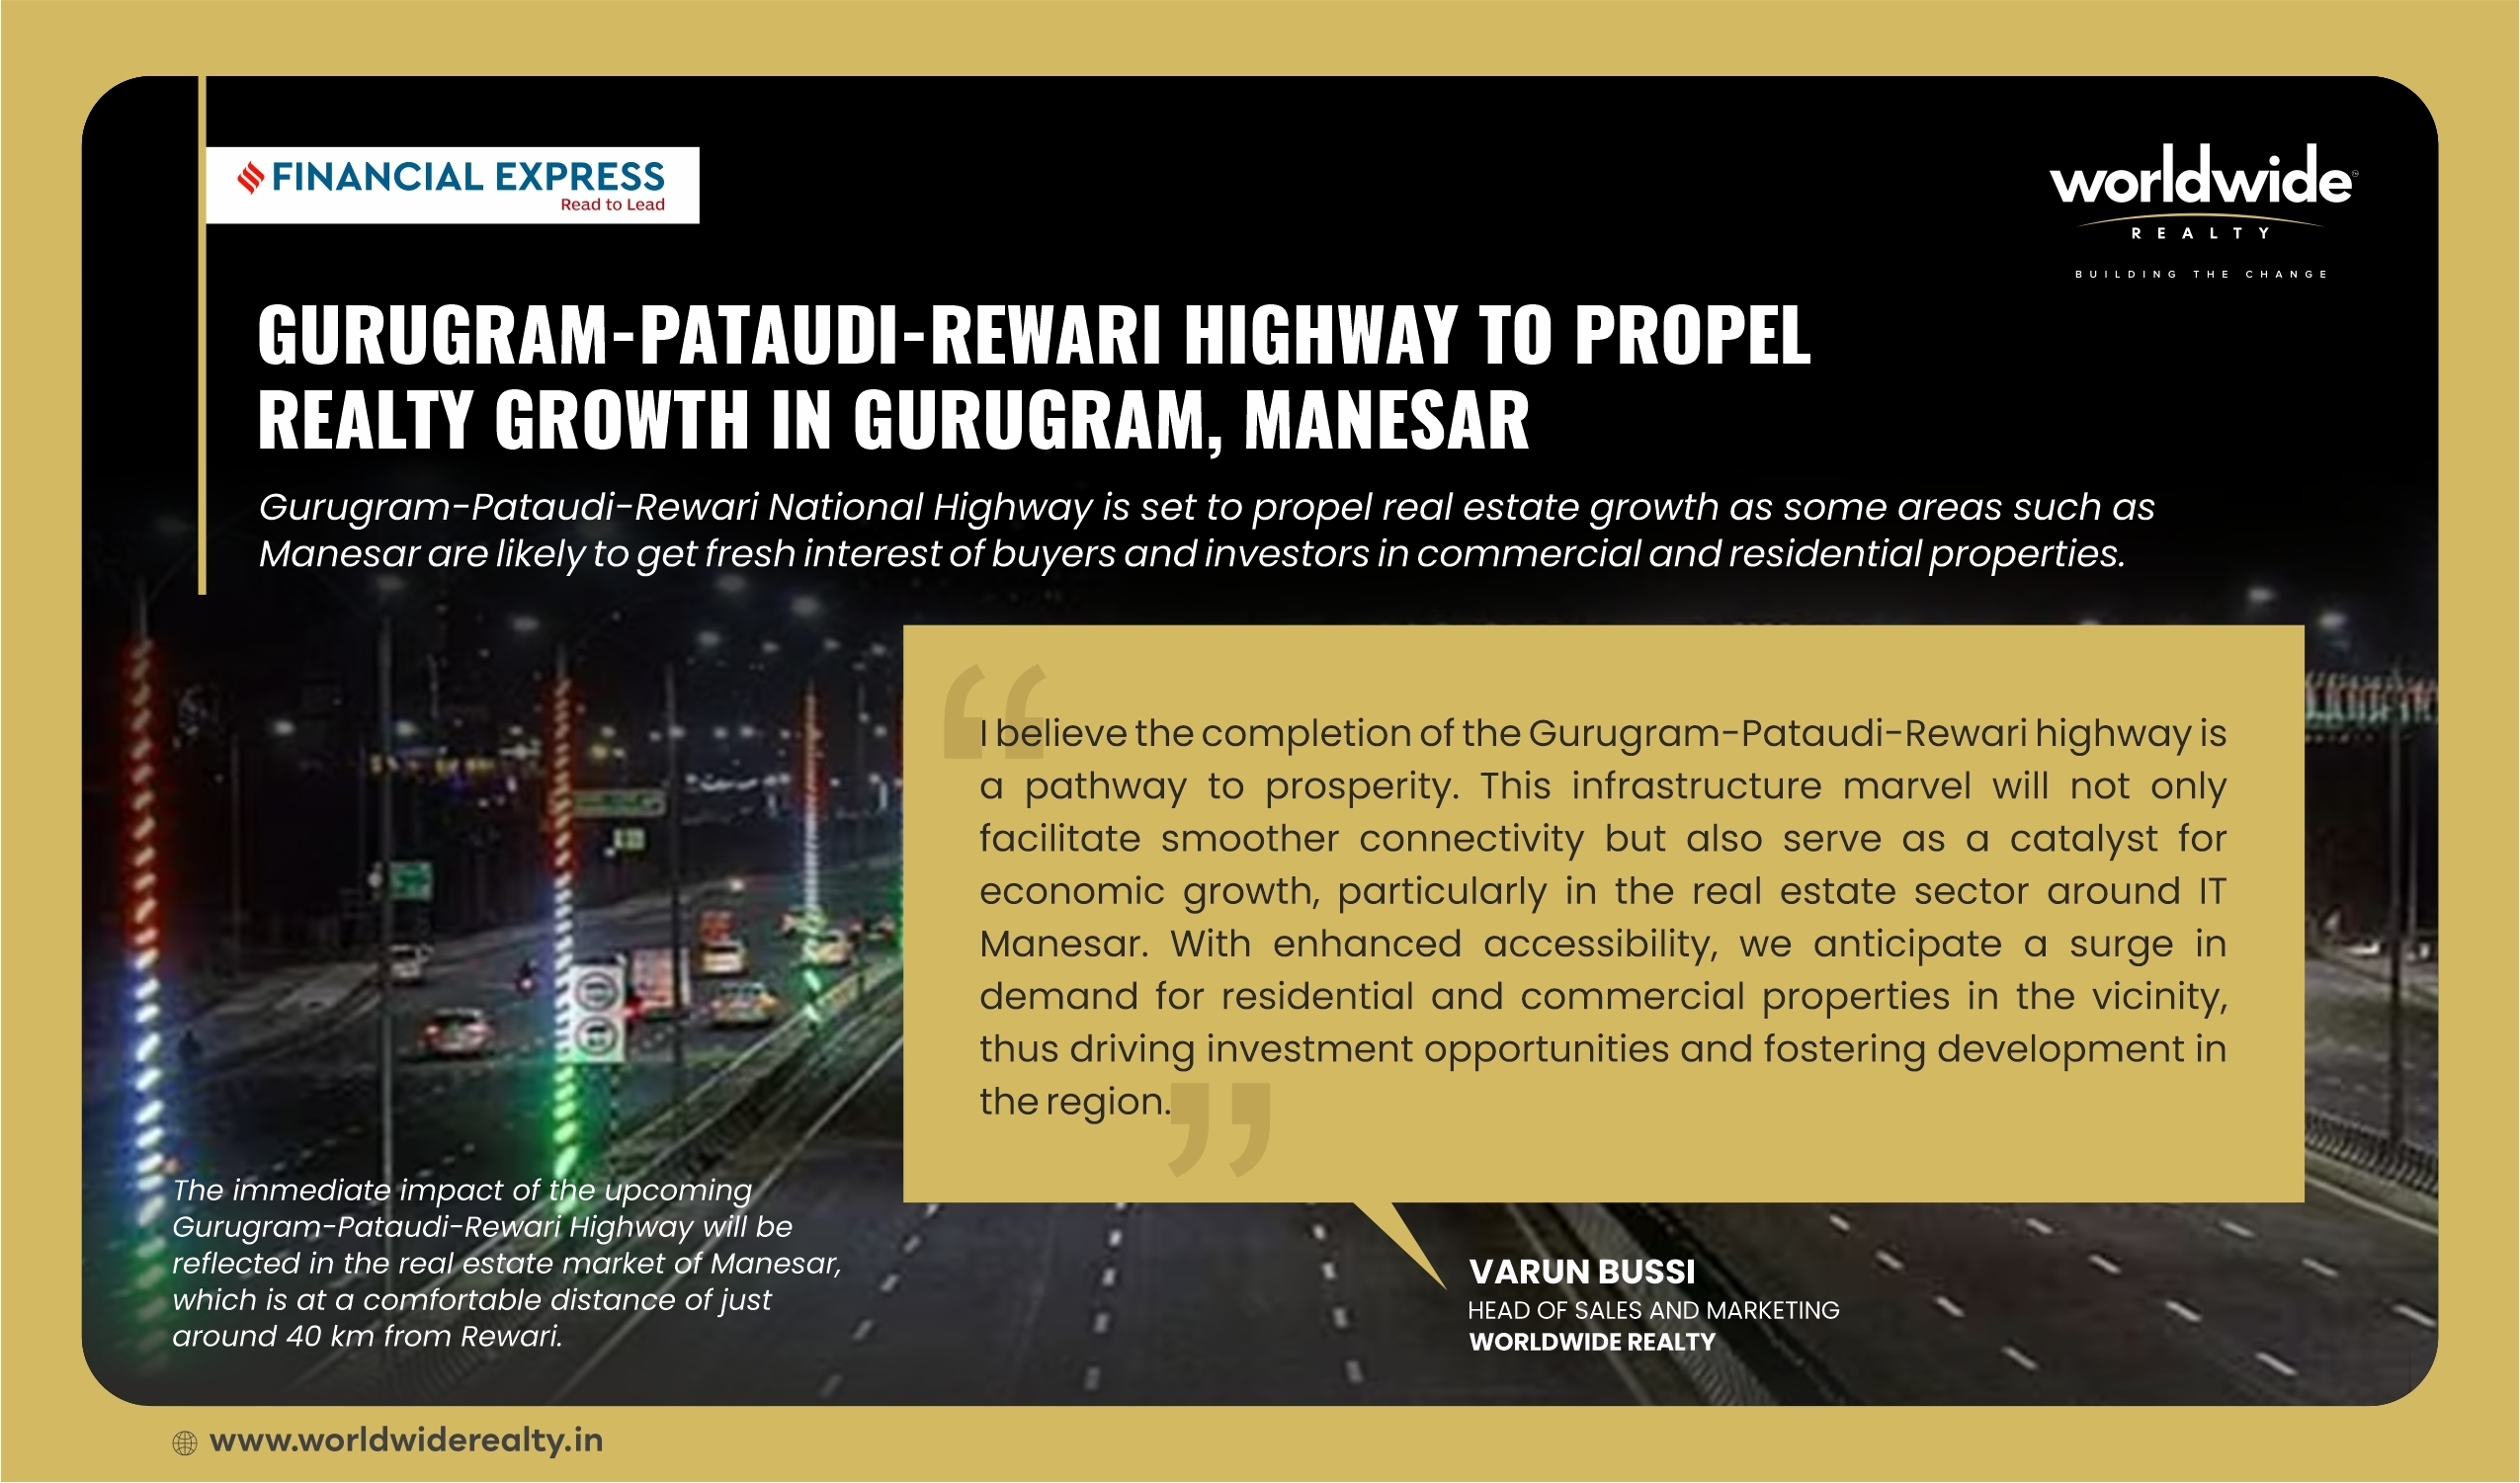 Gurugram-Pataudi-Rewari Highway, the real-estate growth booster